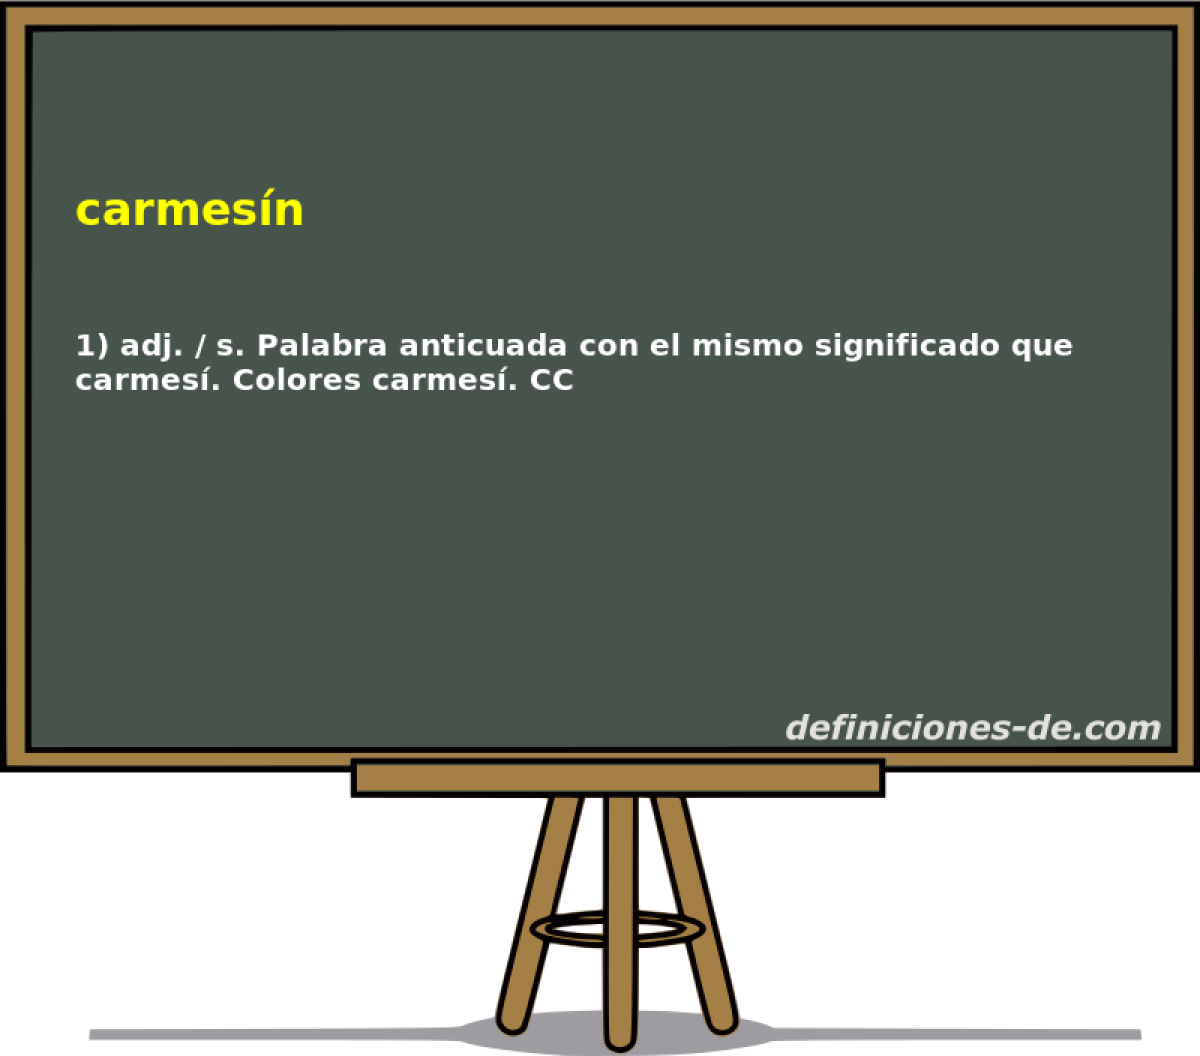 carmesn 